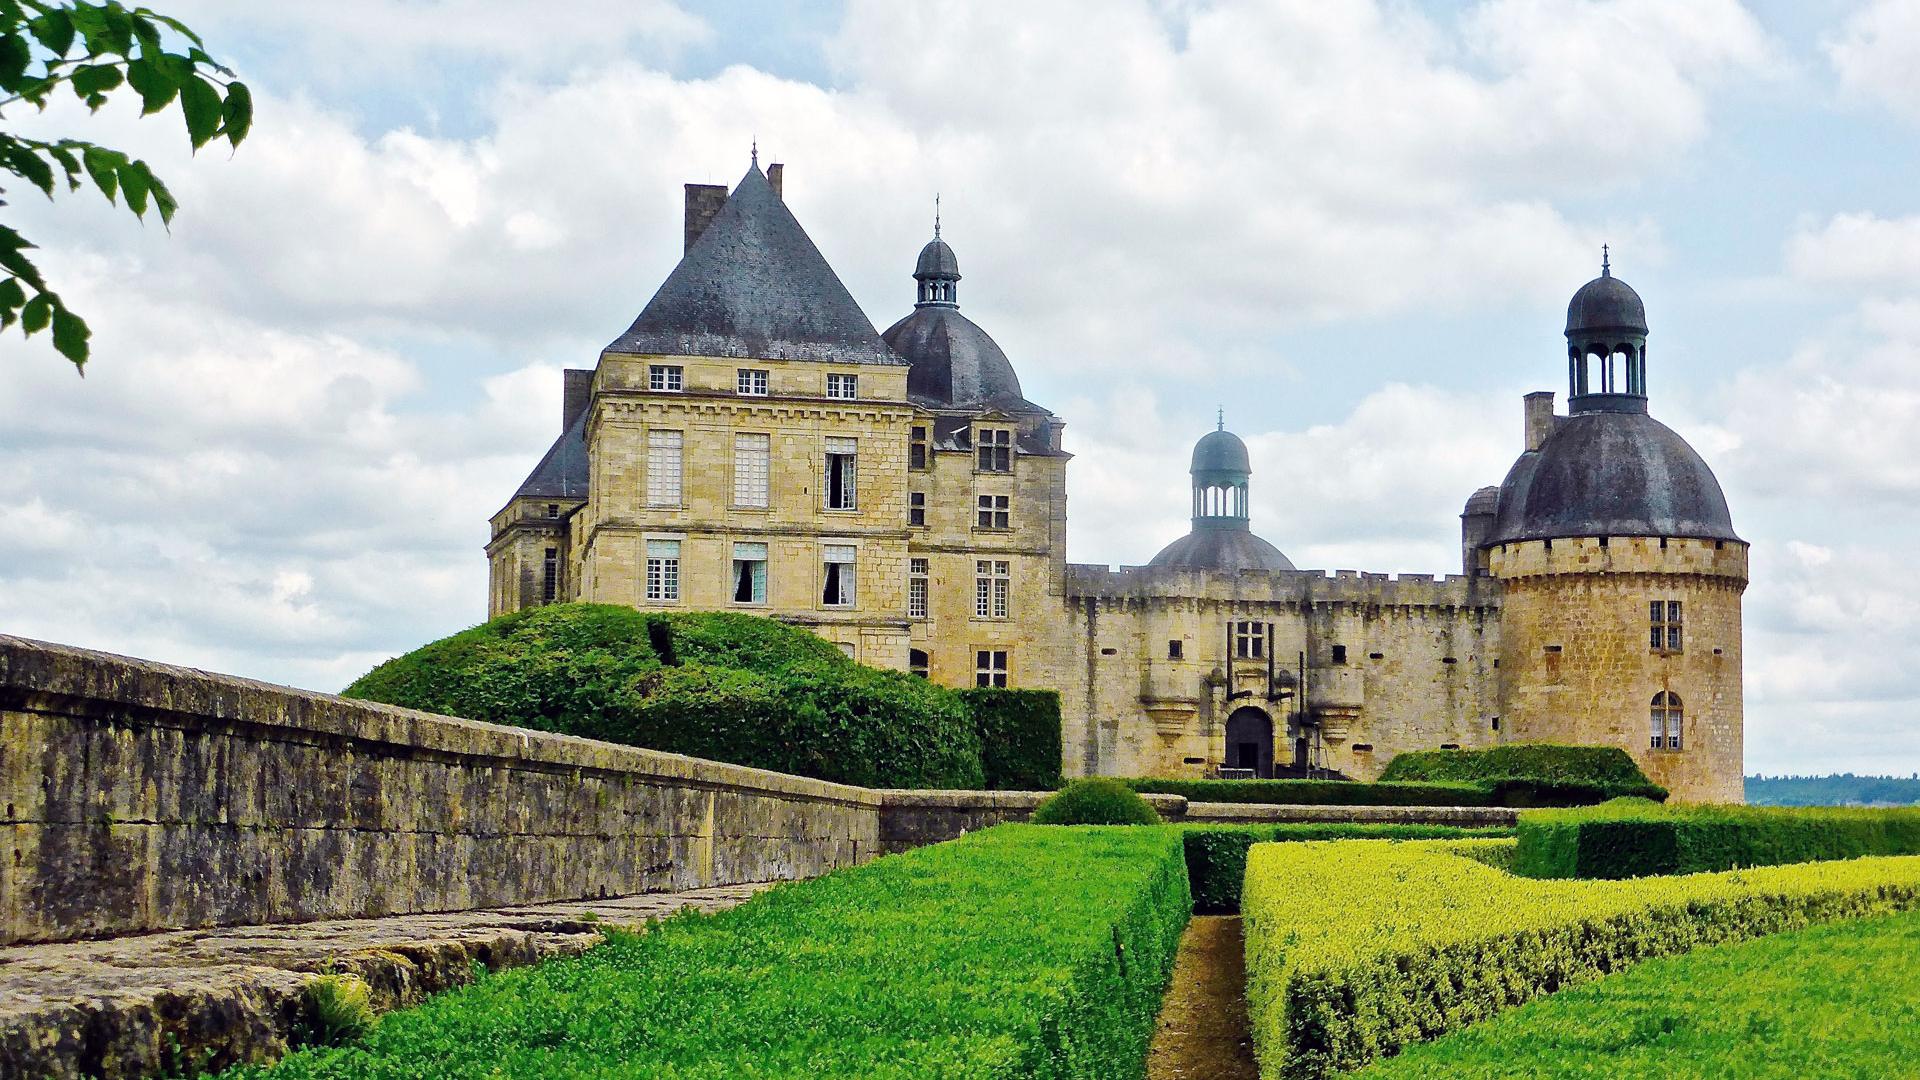 Chateau de Hautefort - Dordogne